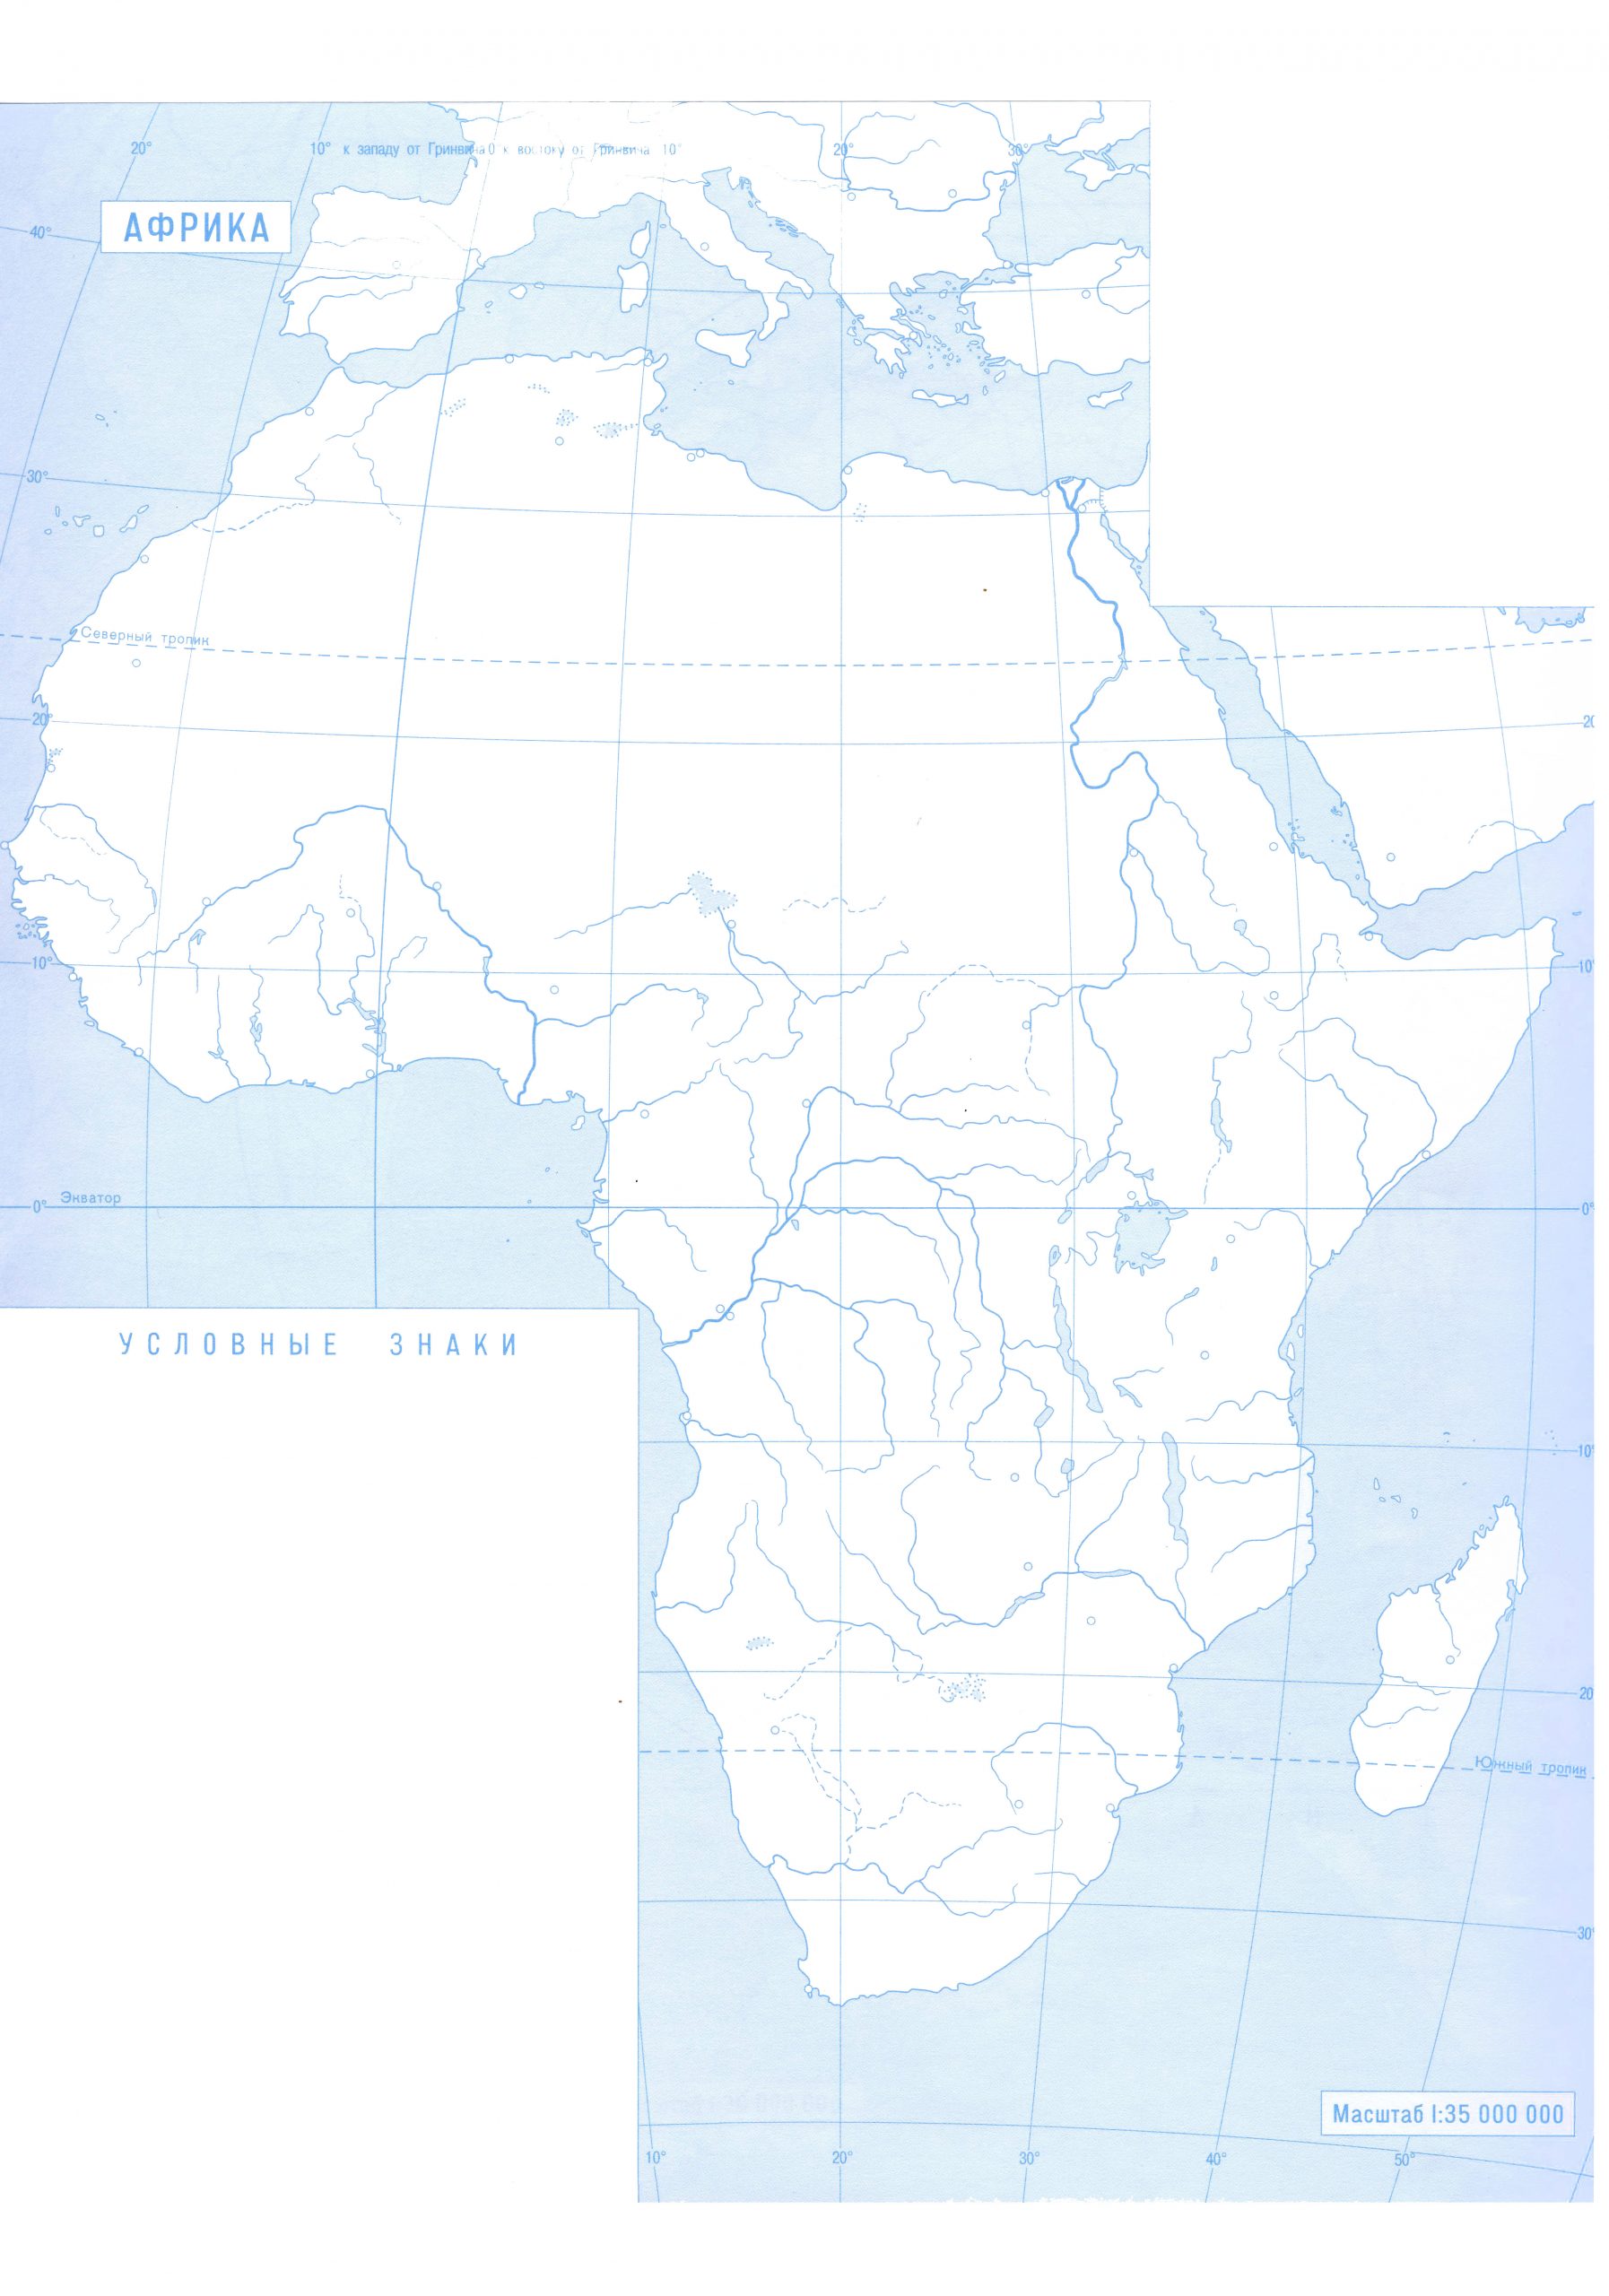 Контурная карта Африки для печати с реками